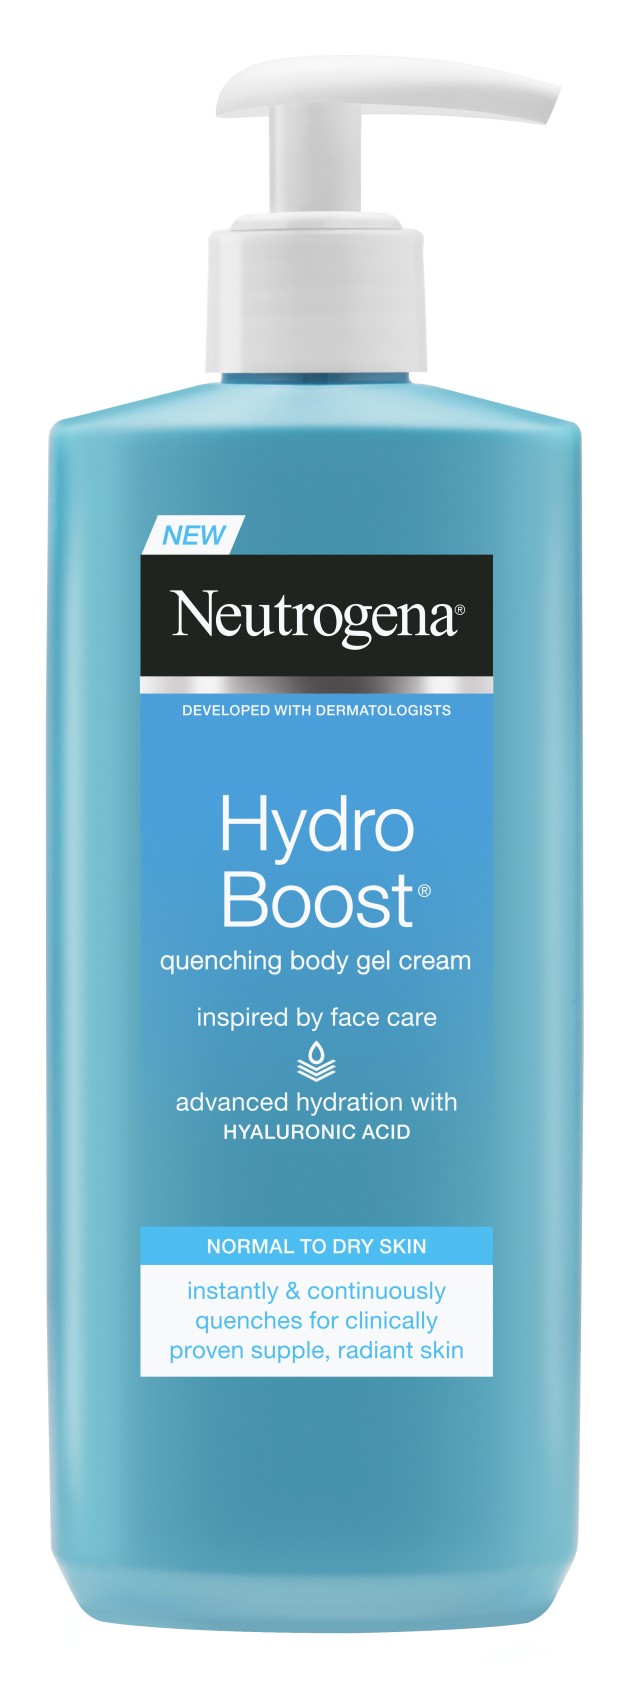 Neutrogena Hydro Boost Gel Cream Body Moisturizing body lotion in gel form 250ml